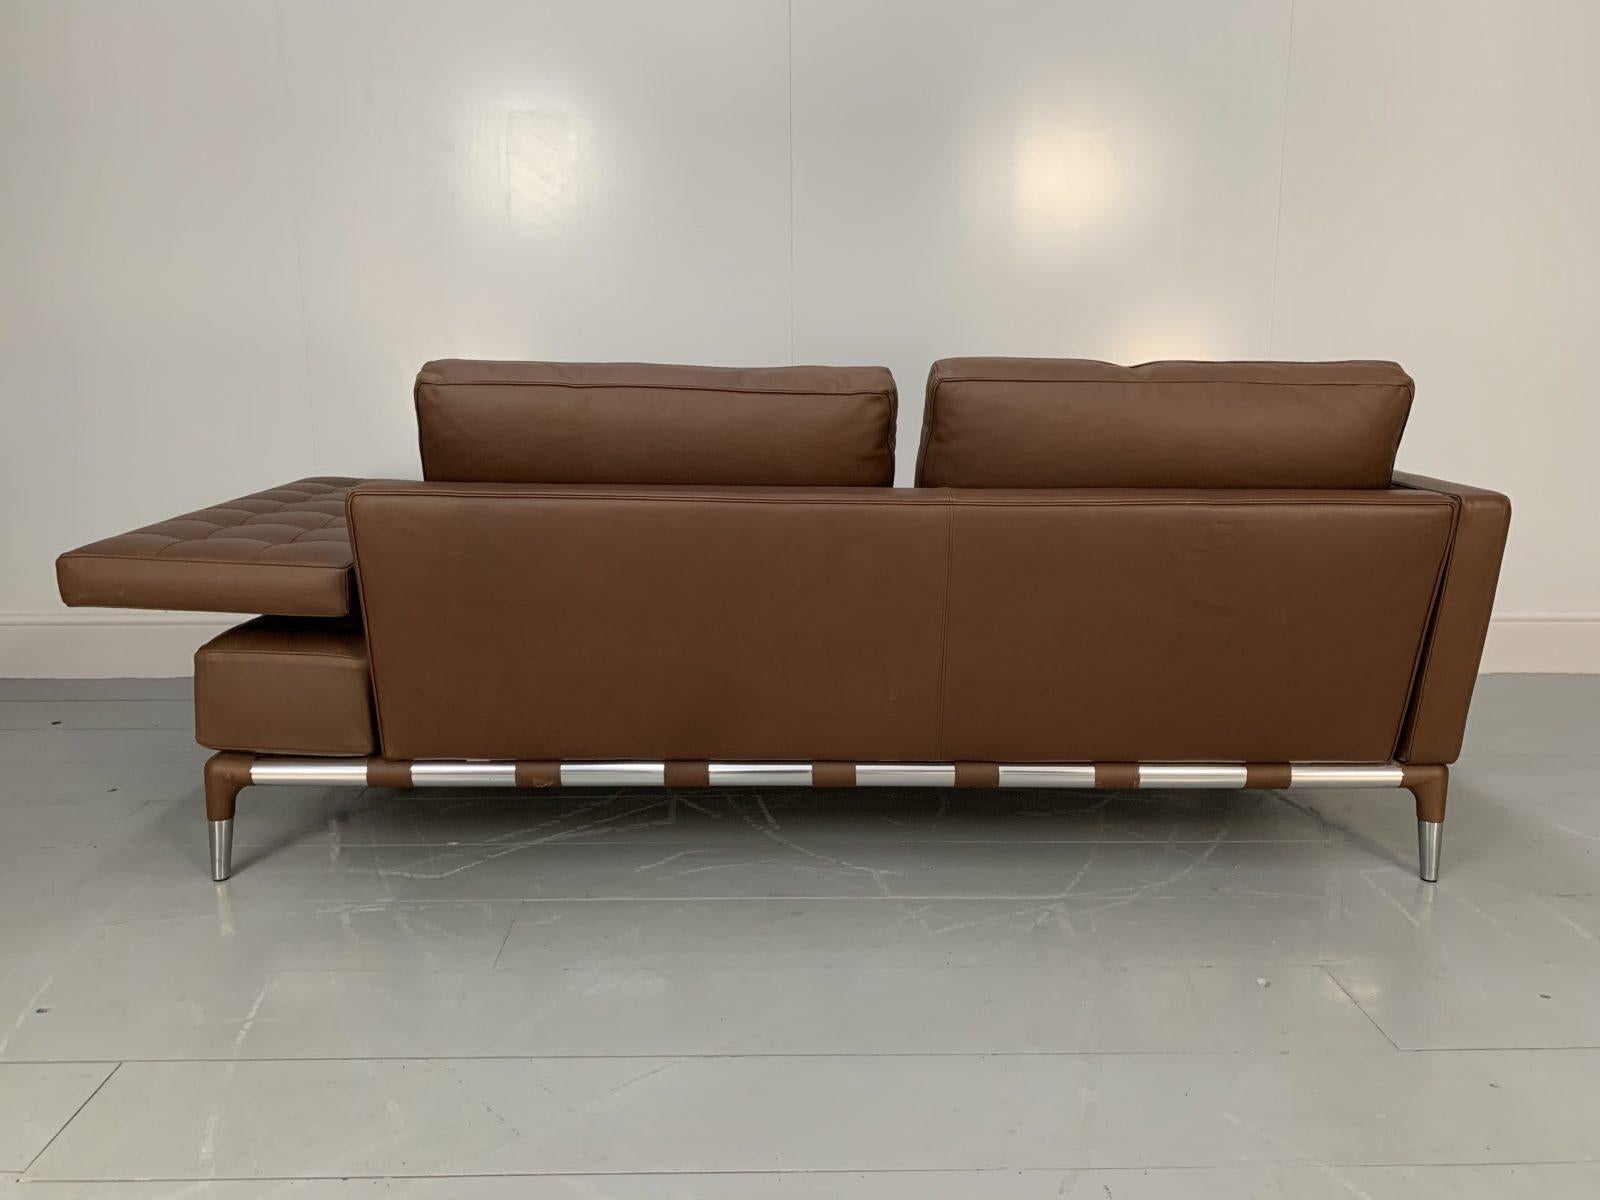 Contemporary Cassina “241 Prive Divano” Sofa – in Mid-Brown “Pelle” Leather